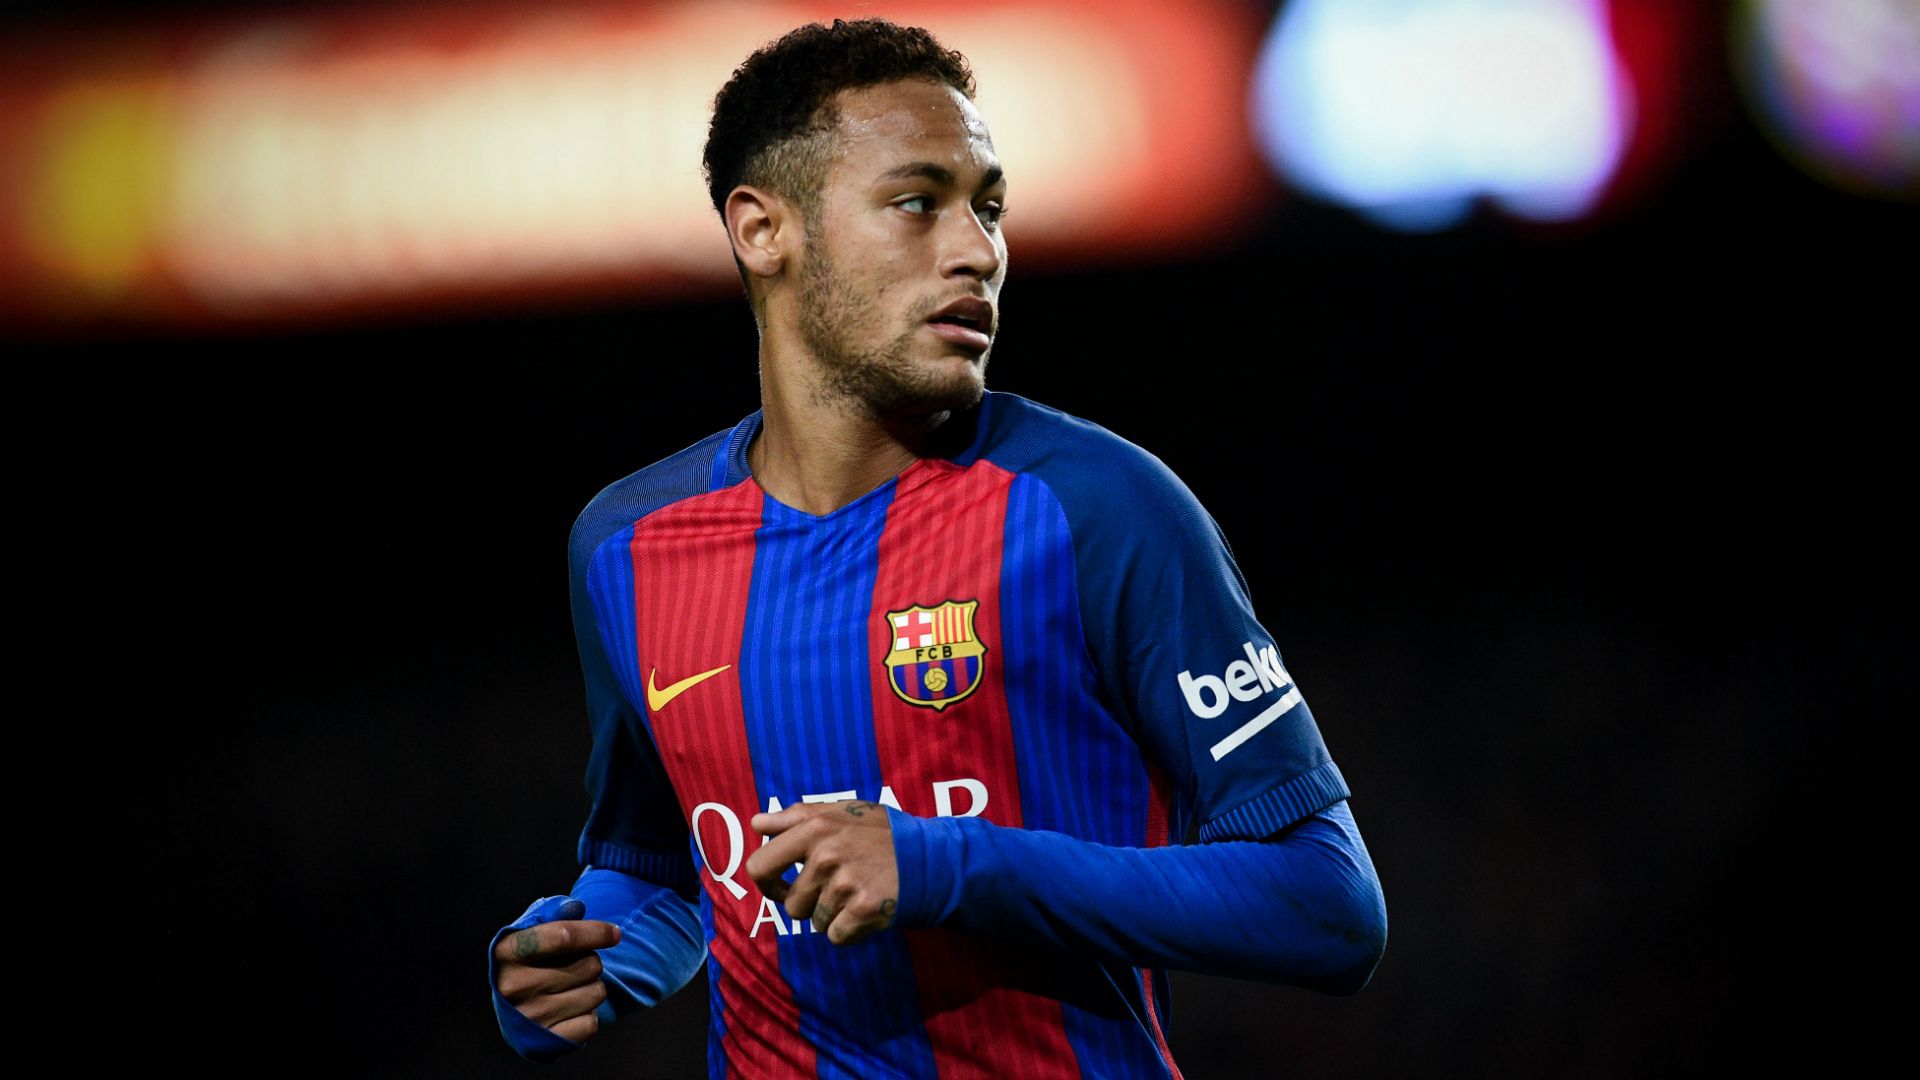 Neymar En El Barcelona 2017 - HD Wallpaper 